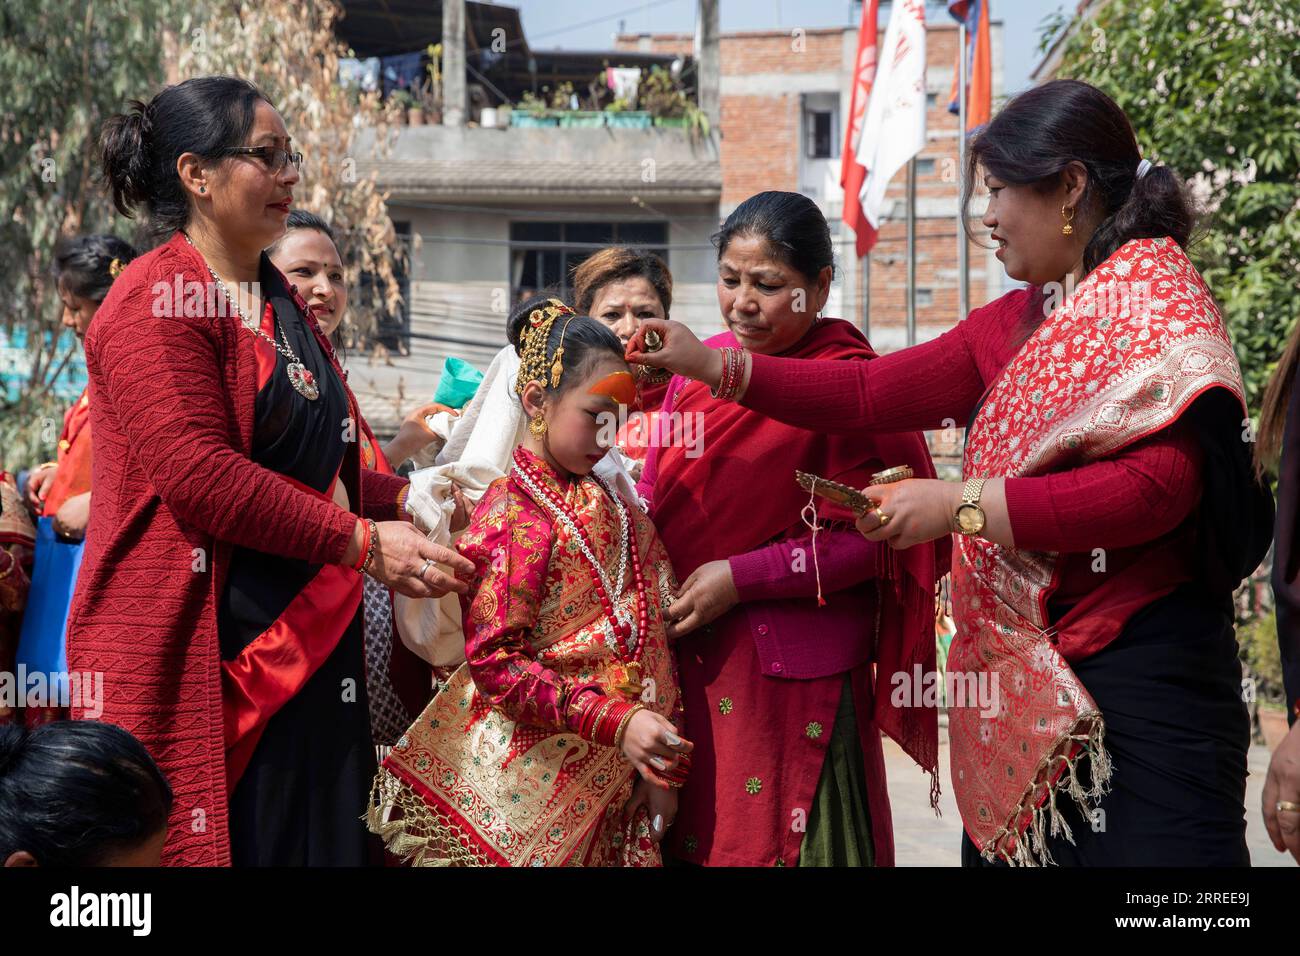 220223 -- LALITPUR, 23 febbraio 2022 -- Una ragazza partecipa a una cerimonia di pubertà nota come Gufa a Lalitpur, Nepal, 23 febbraio 2022. Foto di /Xinhua NEPAL-LALITPUR-GUFA-CERIMONIA DELLA PUBERTÀ HarixMaharjan PUBLICATIONxNOTxINxCHN Foto Stock